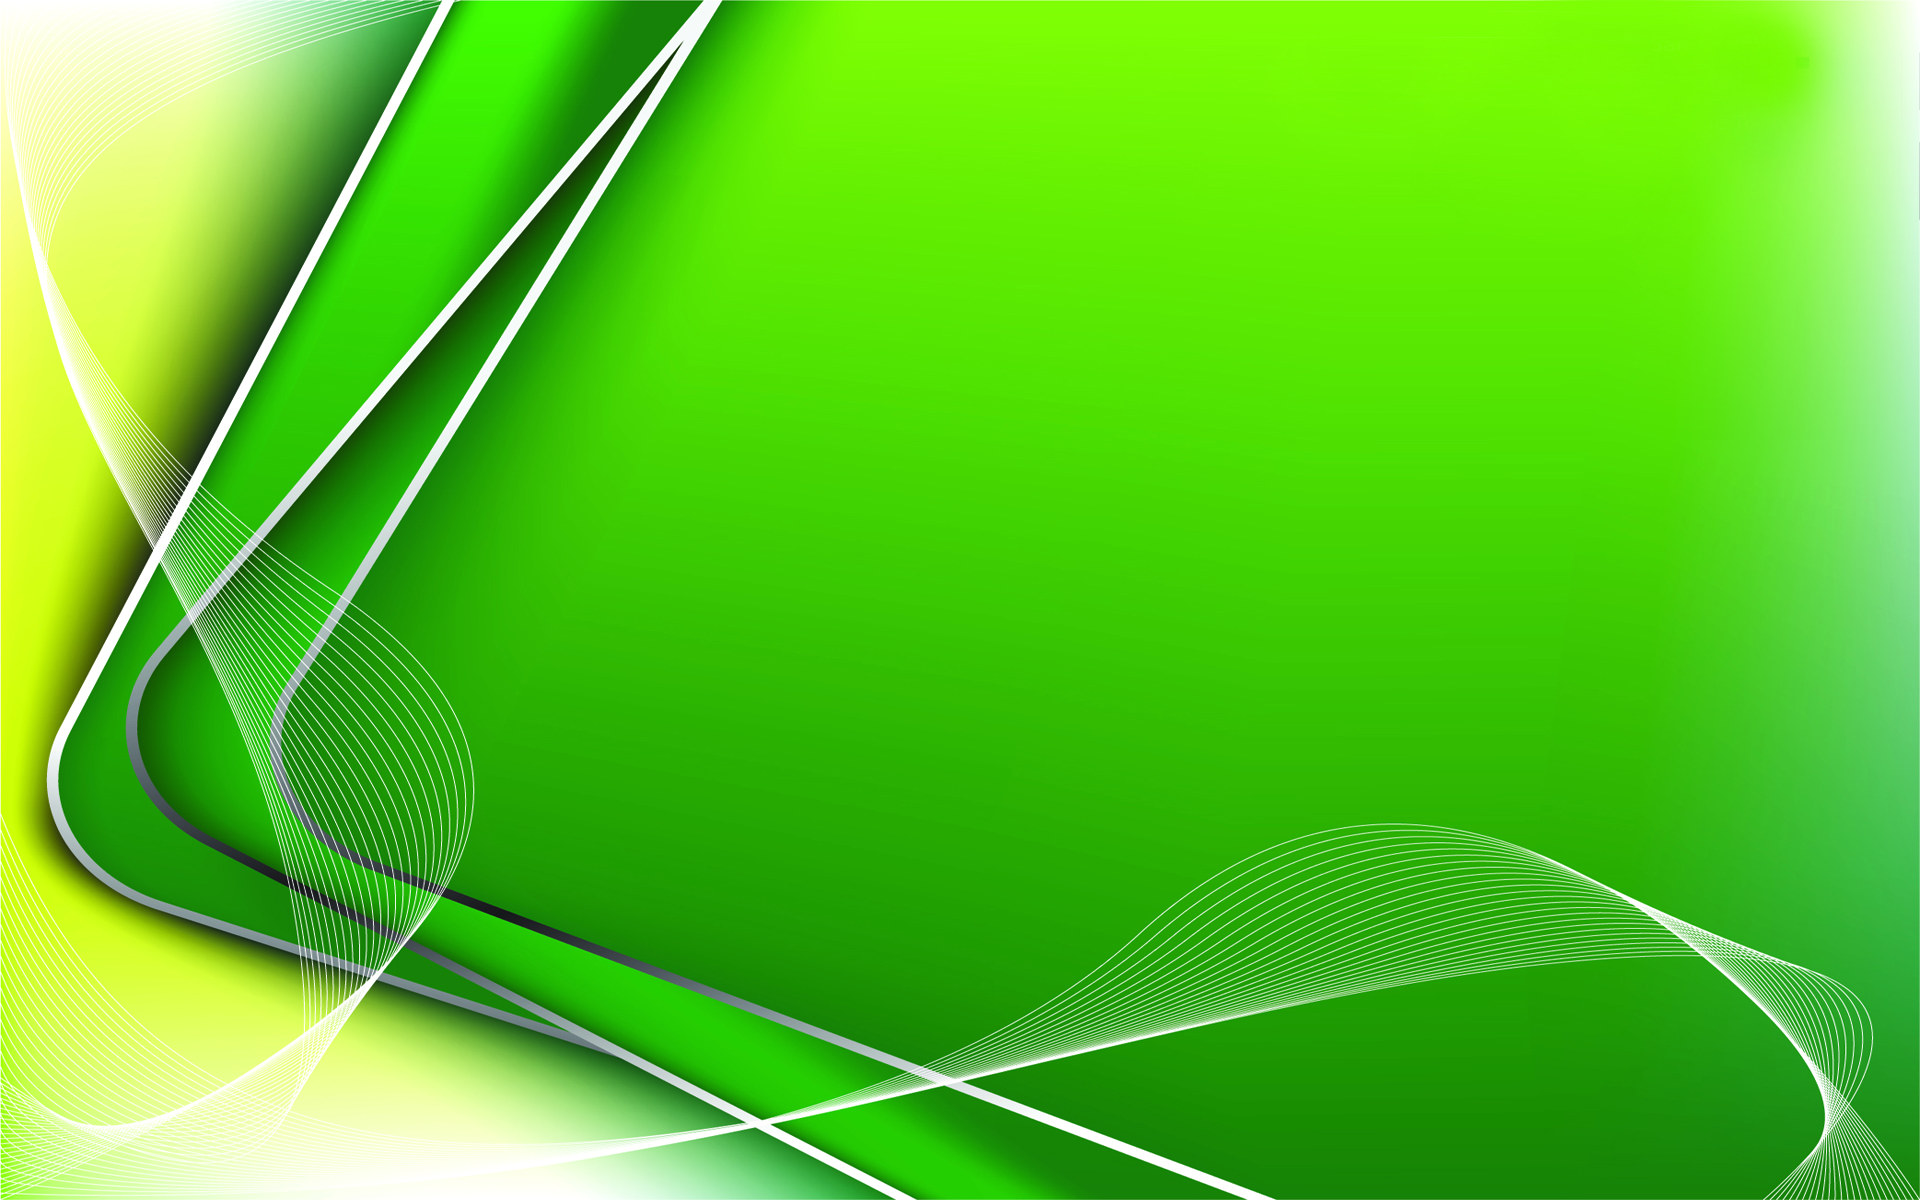 Hình nền màu xanh (Green background wallpaper): Với sự yêu thích của nhiều người dành cho màu xanh, bộ sưu tập hình nền màu xanh của chúng tôi chắc chắn sẽ làm hài lòng bạn. Từ tông màu xanh nhạt tỏa sáng đến xanh đậm tươi mới, bộ sưu tập của chúng tôi đảm bảo sẽ cung cấp cho bạn một trải nghiệm thú vị khi trang trí cho thiết bị của mình.